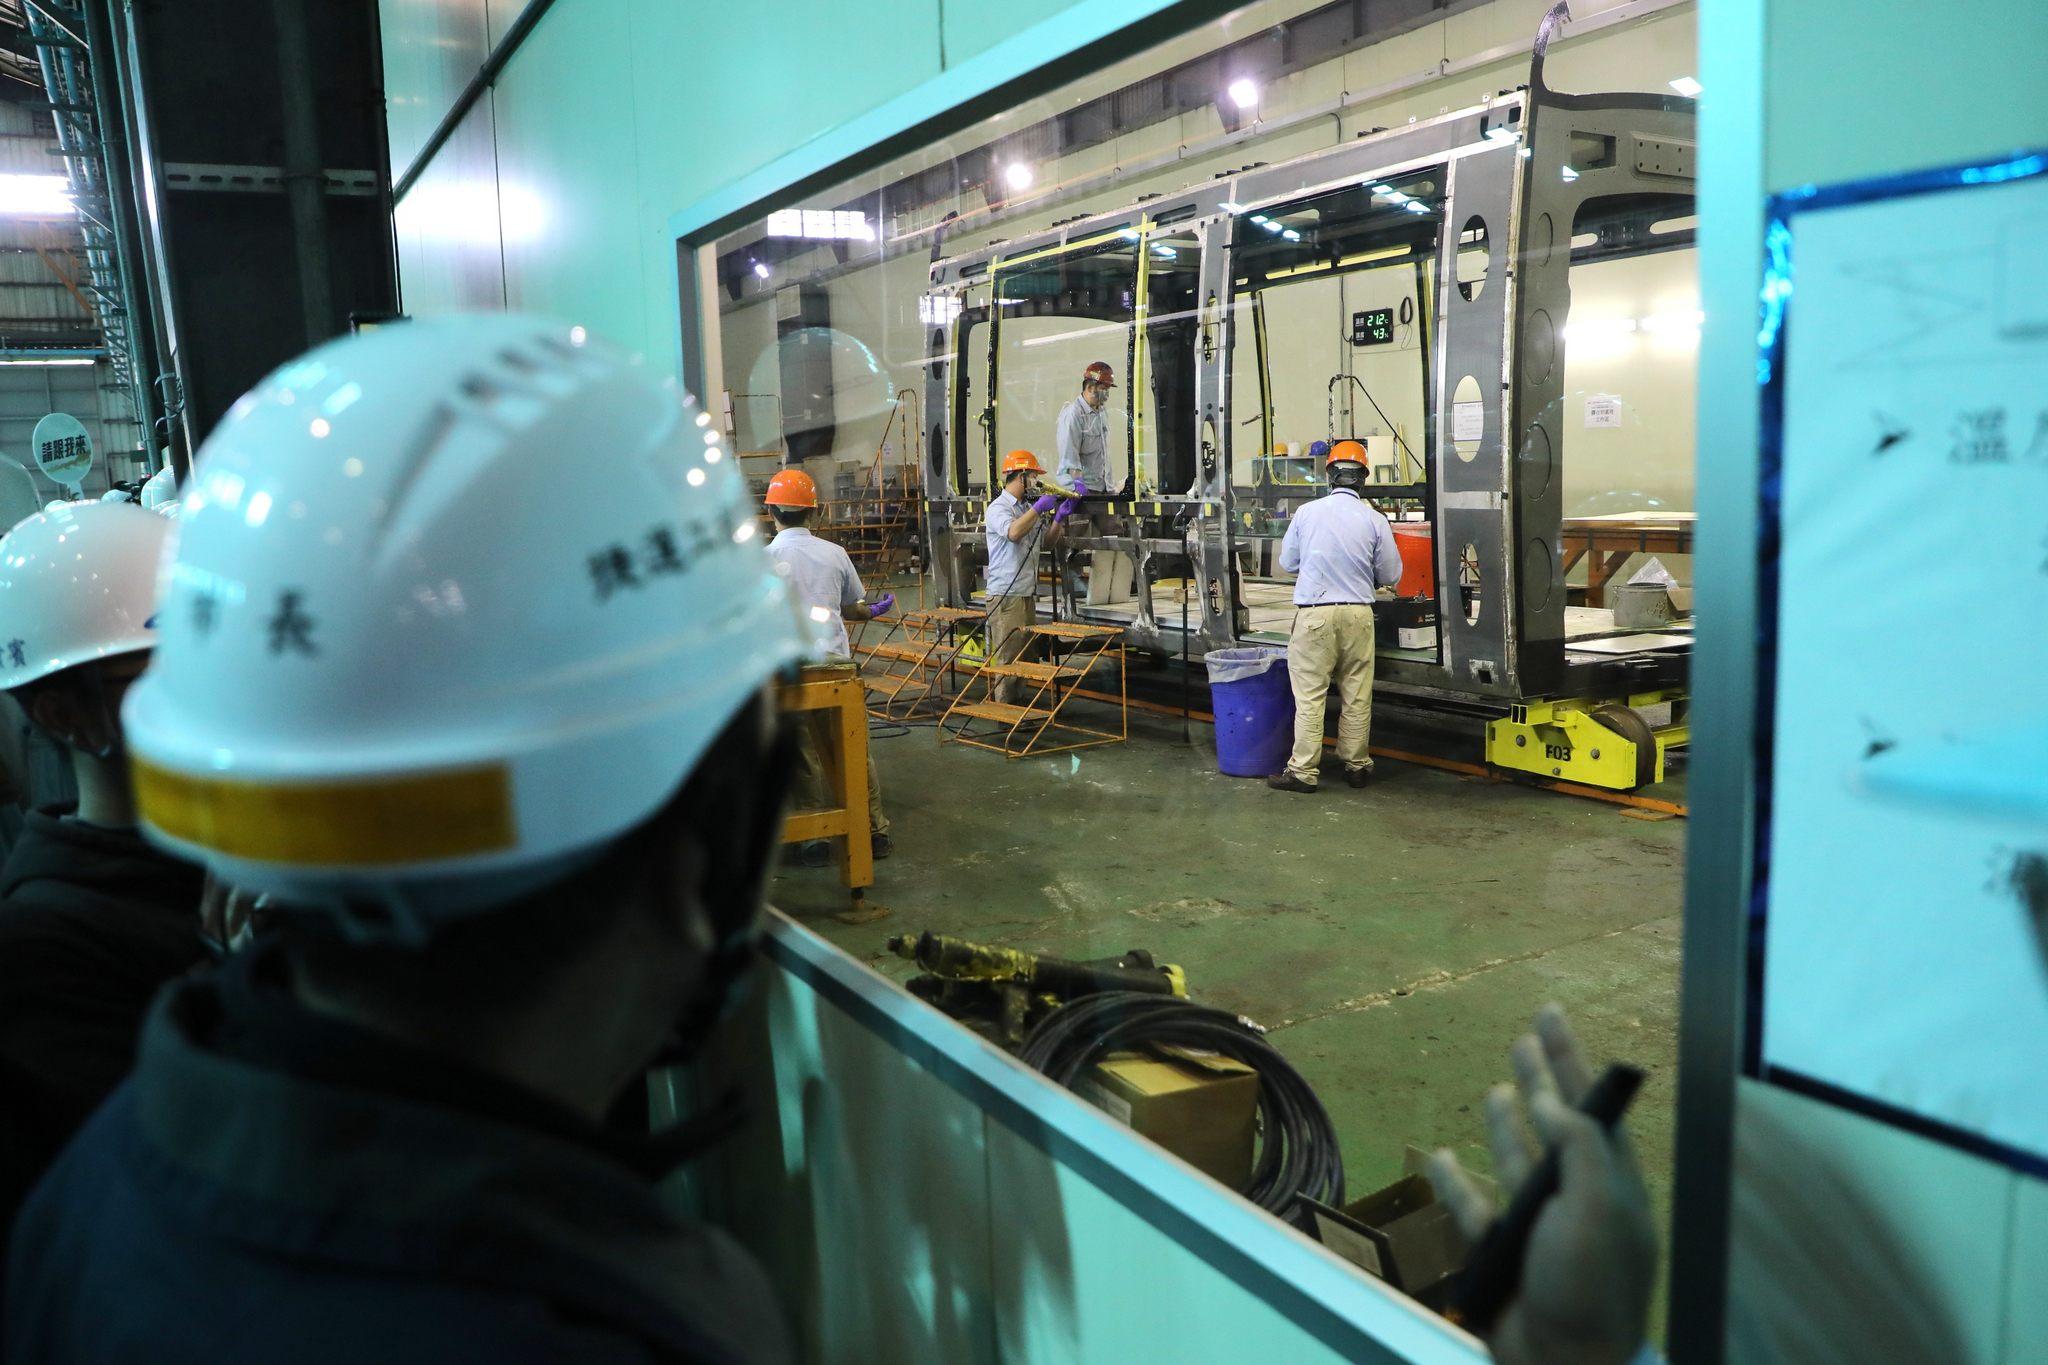 安坑輕軌列車由台灣車輛公司組裝完成，針對淡海輕軌經驗軟硬體全面優化升級